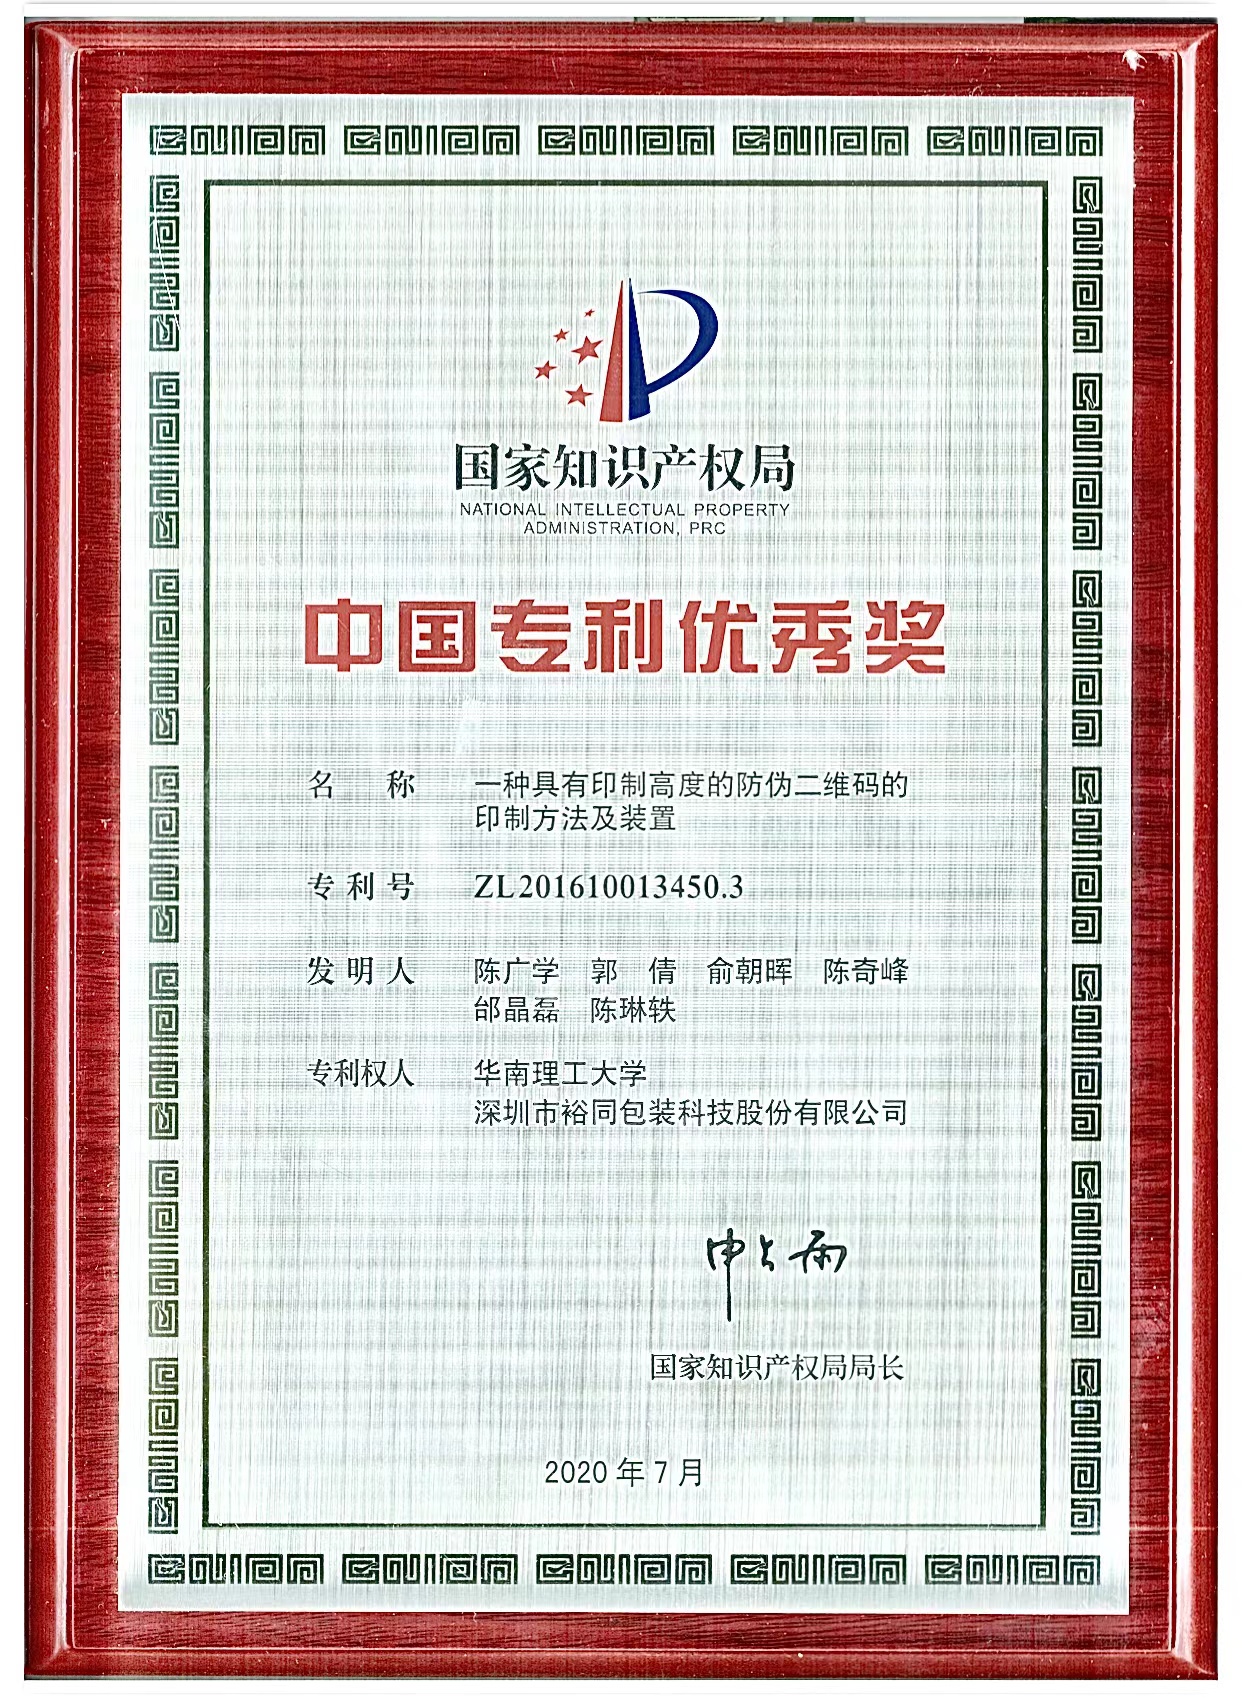 华南理工大学陈广学教授团队荣获第二十一届中国专利优秀奖